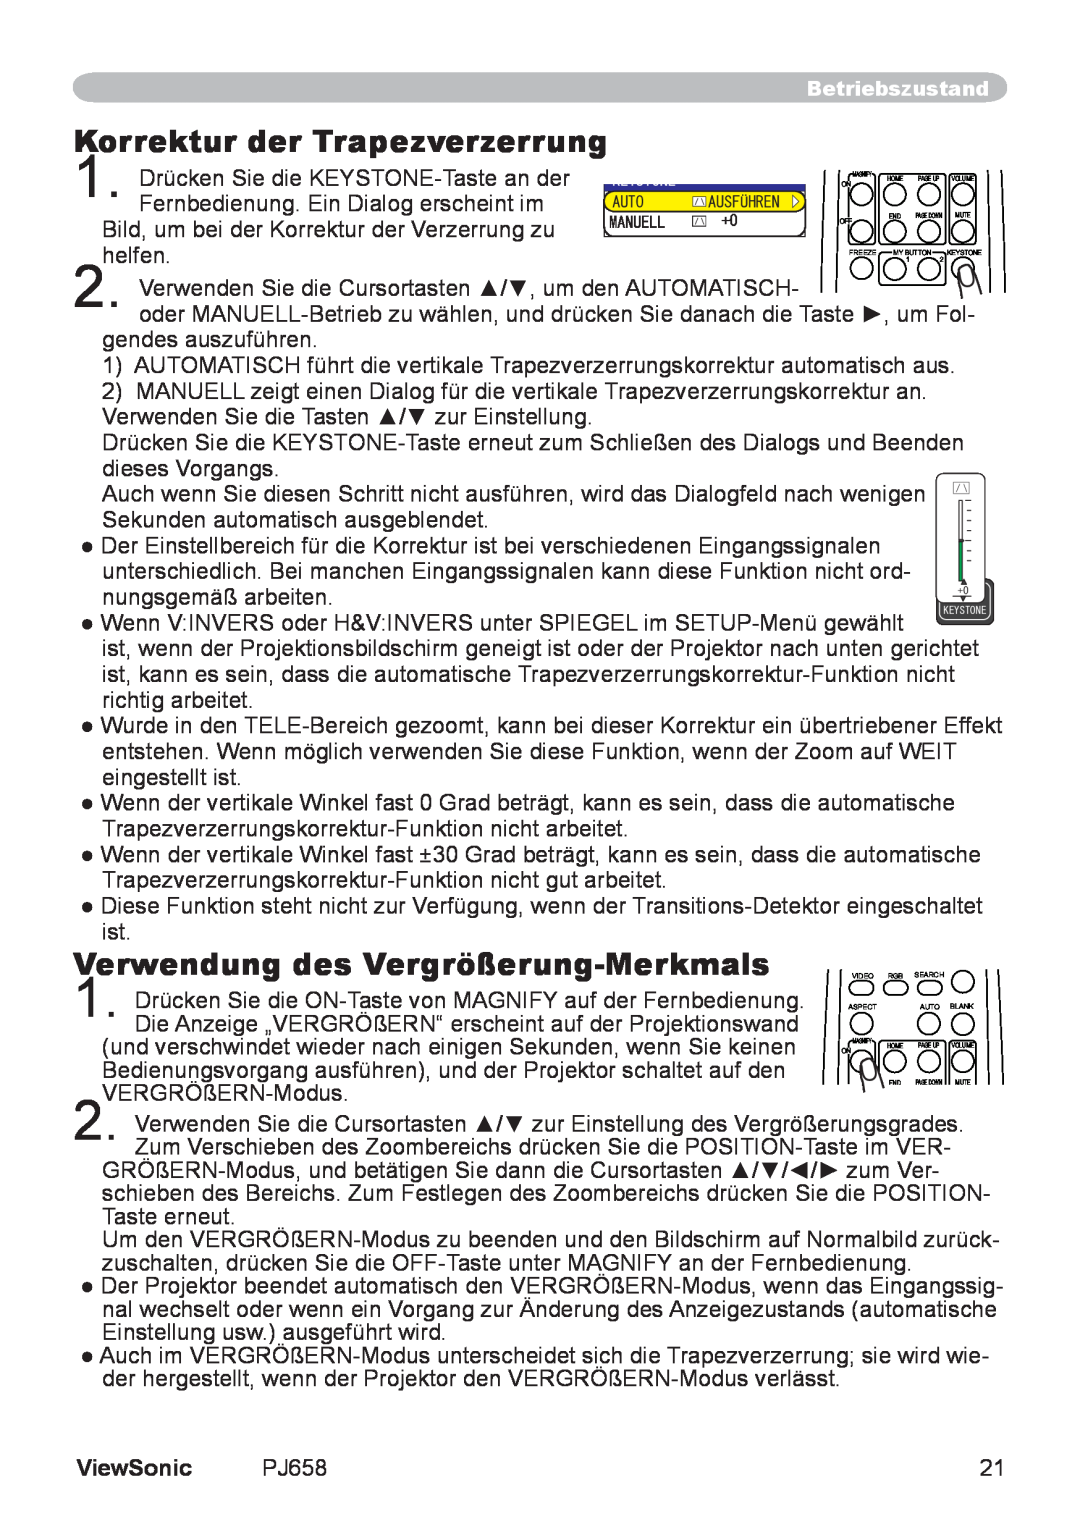 ViewSonic VS11361 manual Korrektur der Trapezverzerrung, Verwendung des Vergrößerung-Merkmals, ViewSonic 